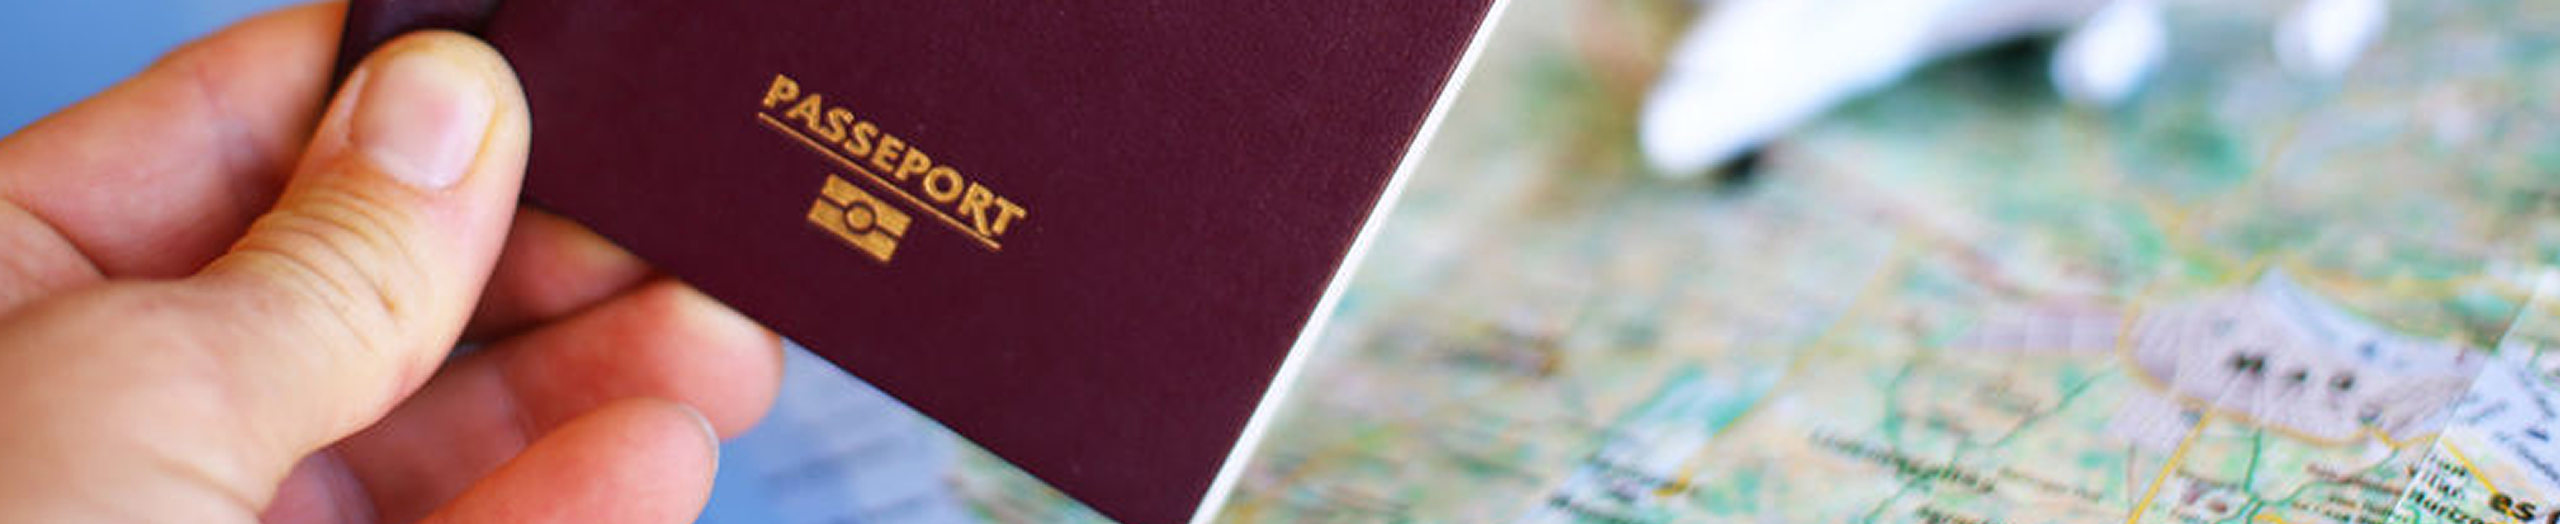 passeport_1